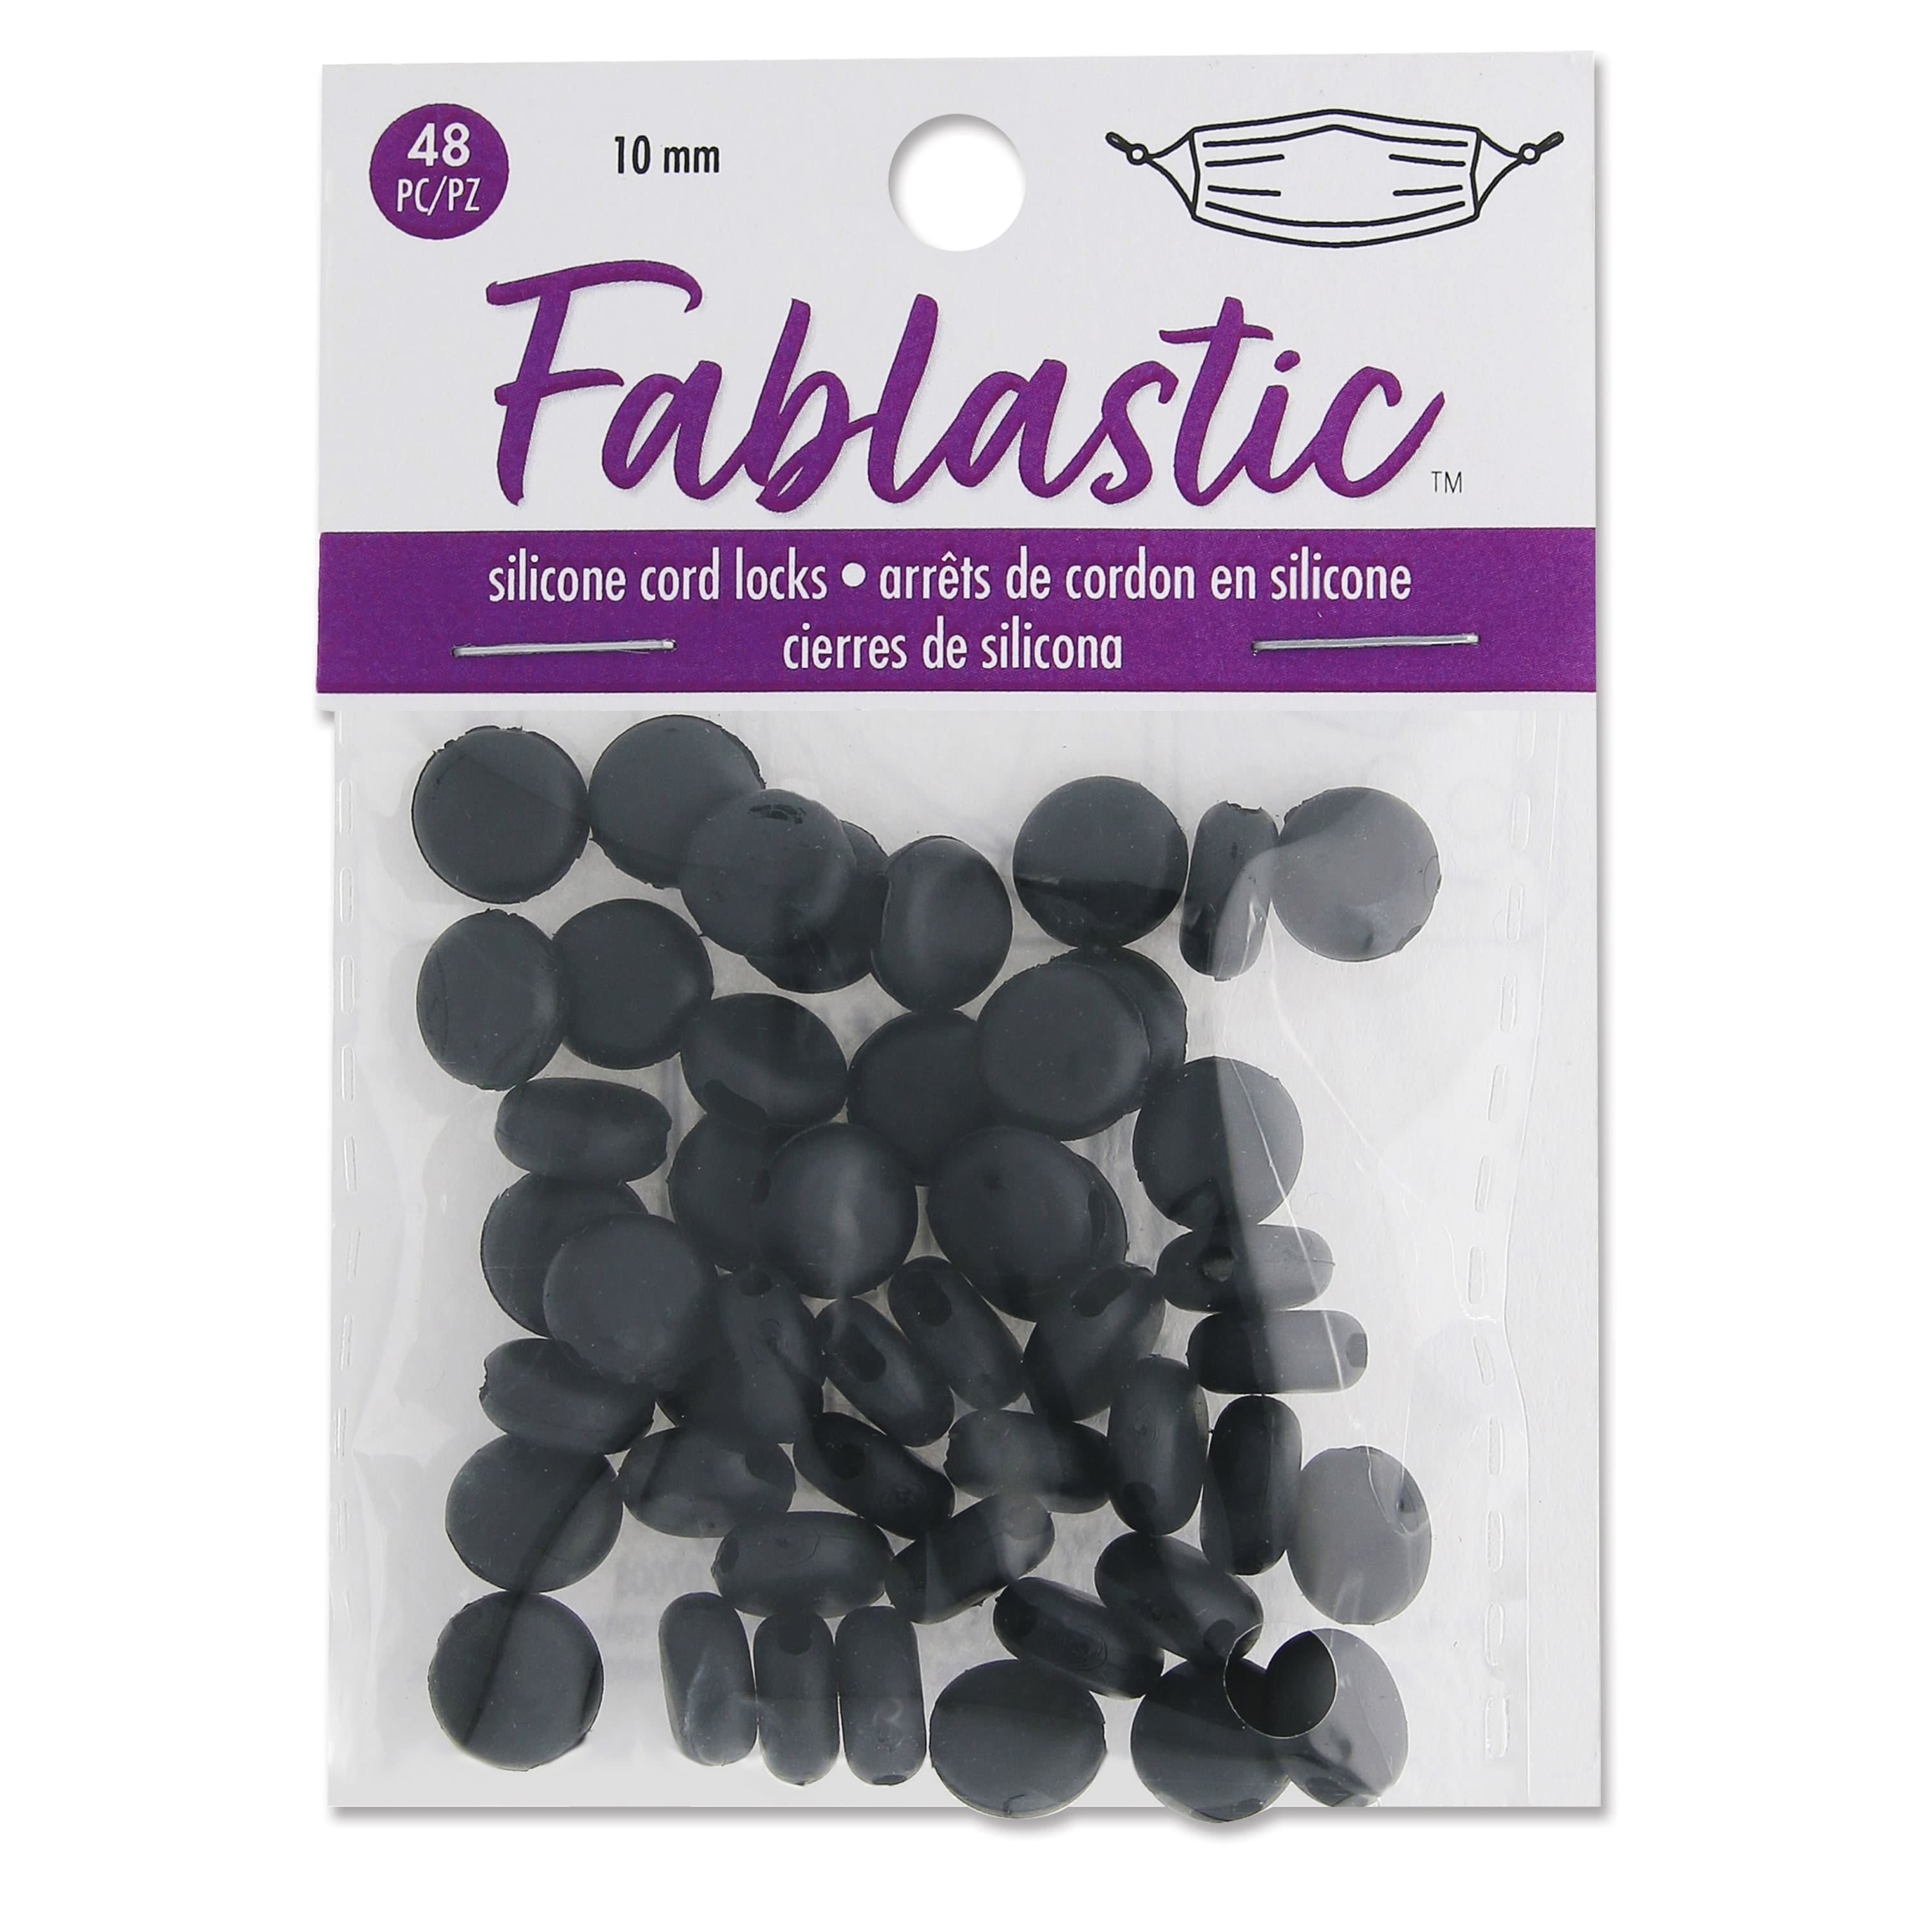 12 Packs: 48 ct. (576 total) Fablastic&#x2122; Black Silicone Cord Locks, 10mm